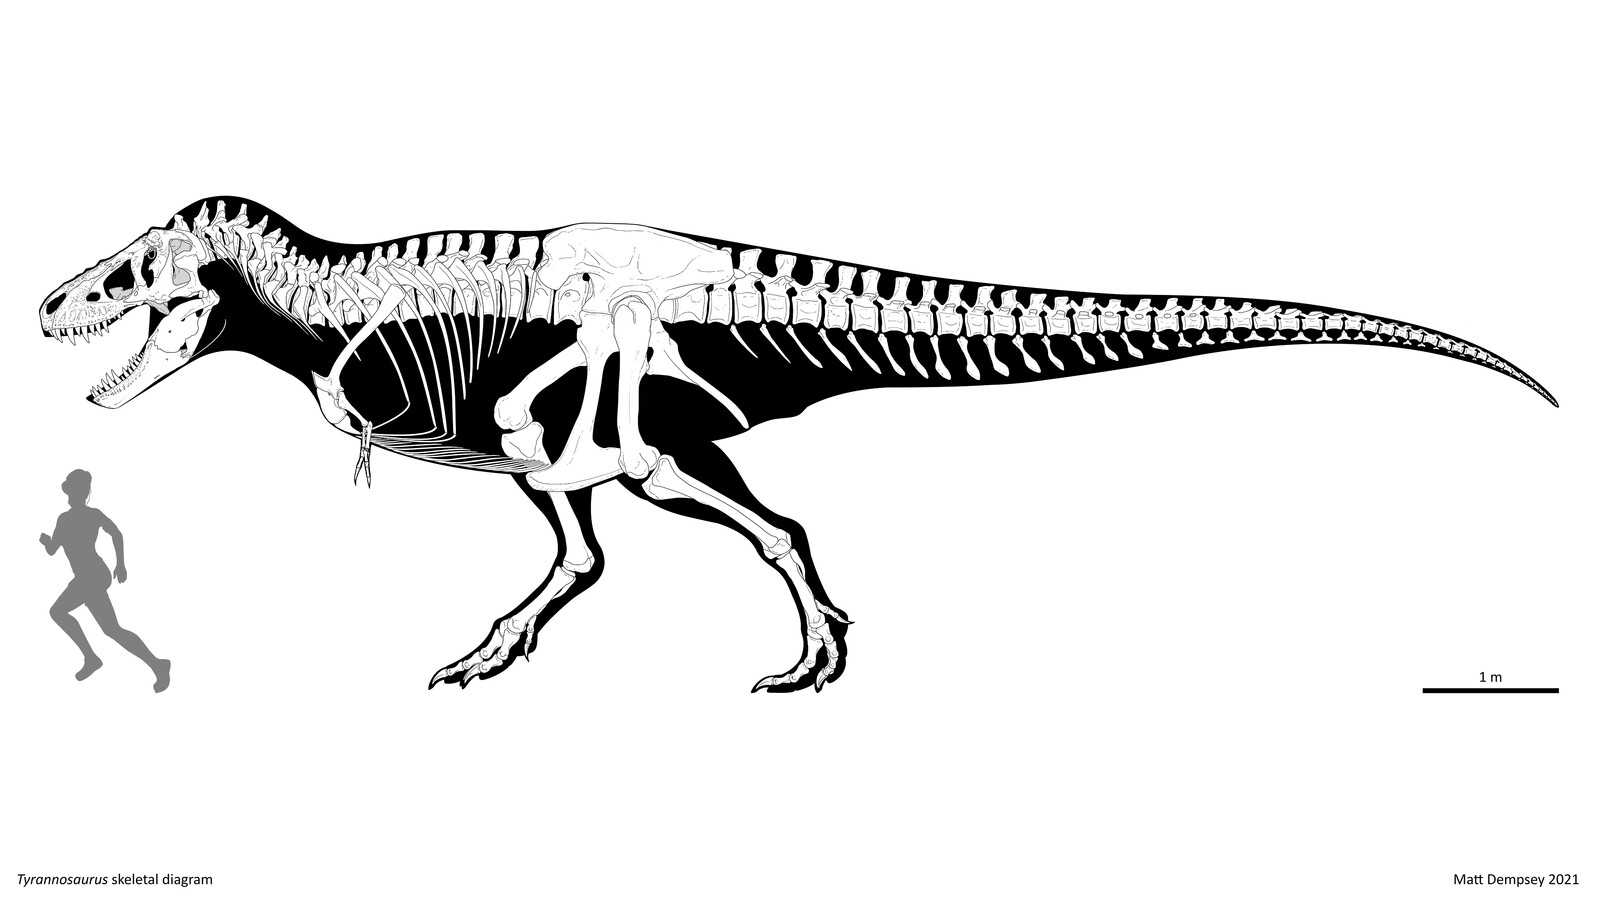 Matt Dempsey - Tyrannosaurus skeletal reconstruction